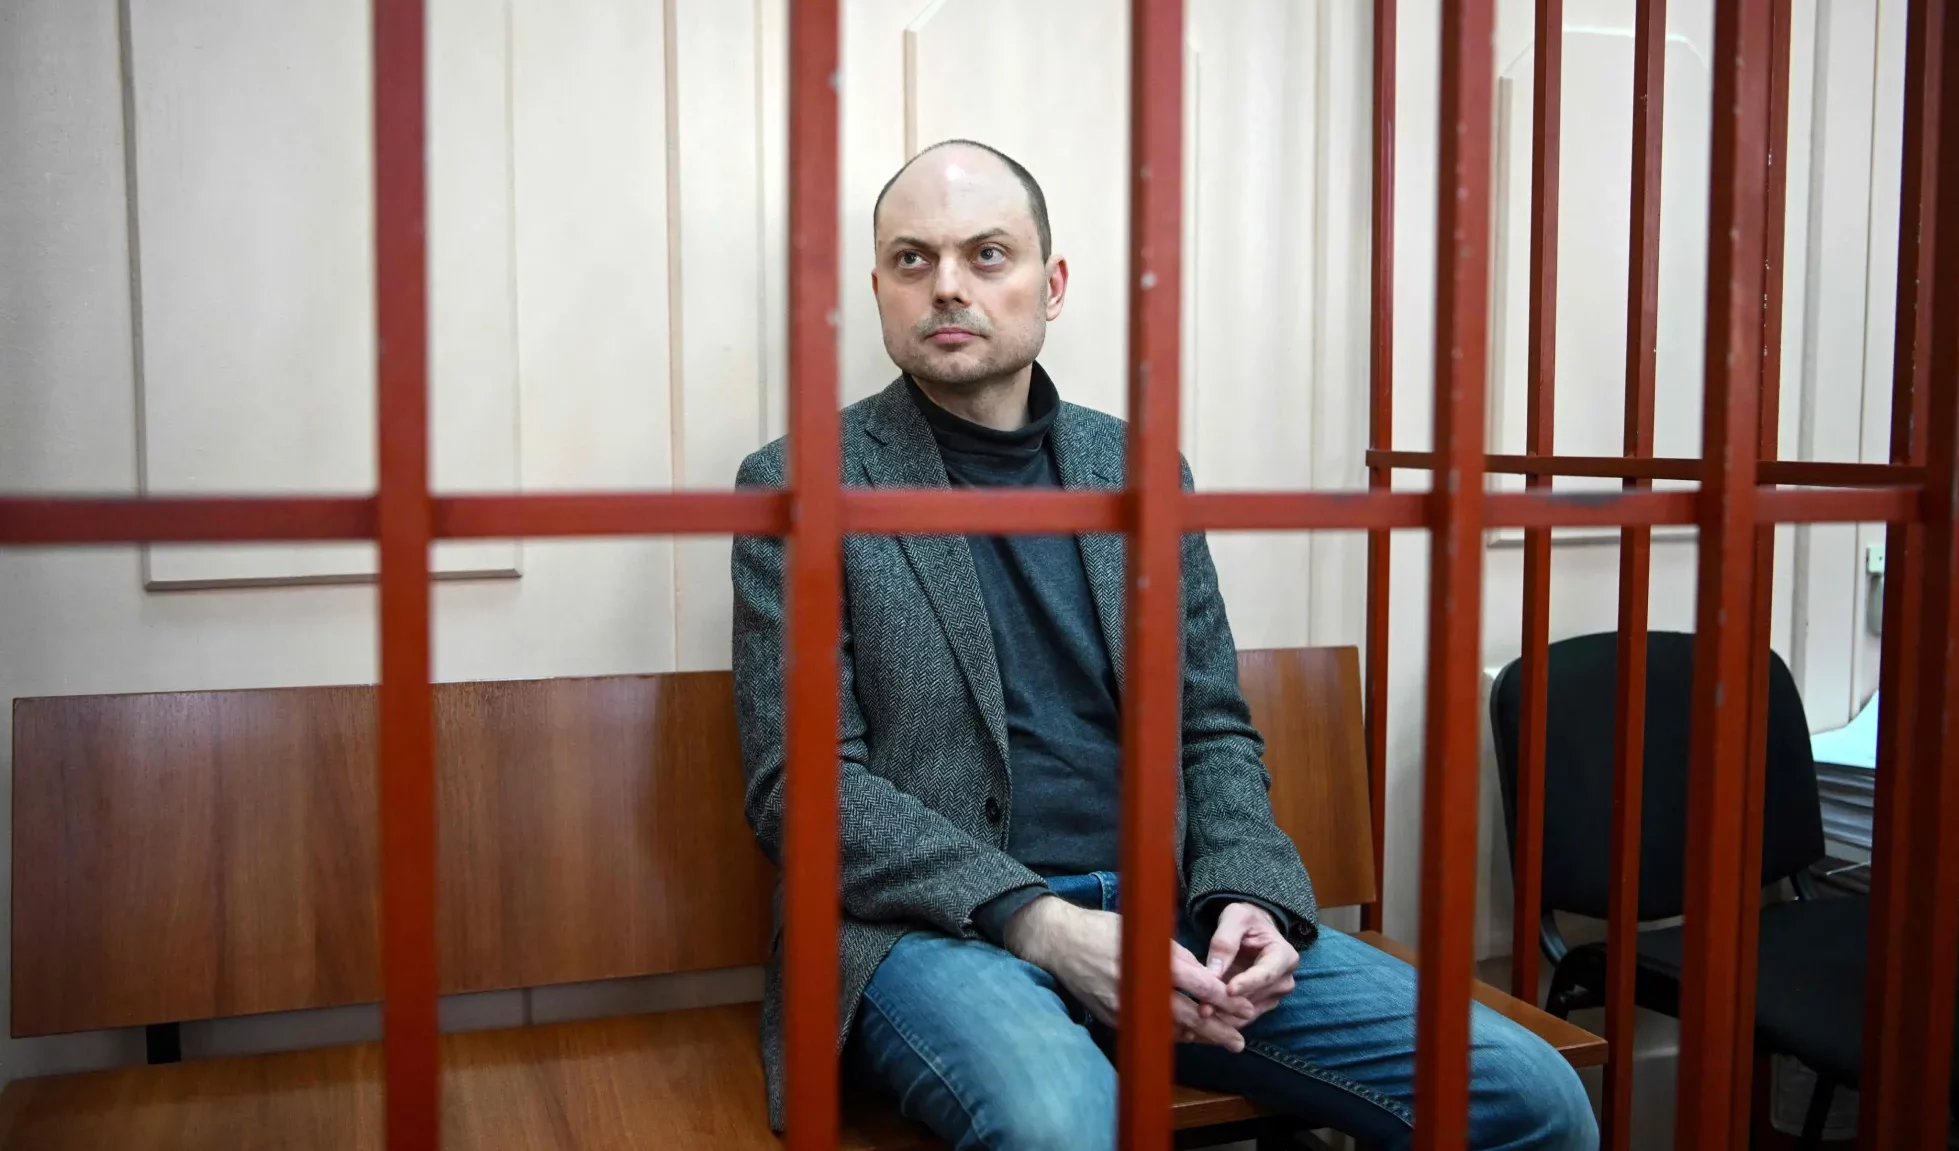 Londra chiede a Putin di rilasciare il dissidente Kara-Murza per cure mediche urgenti